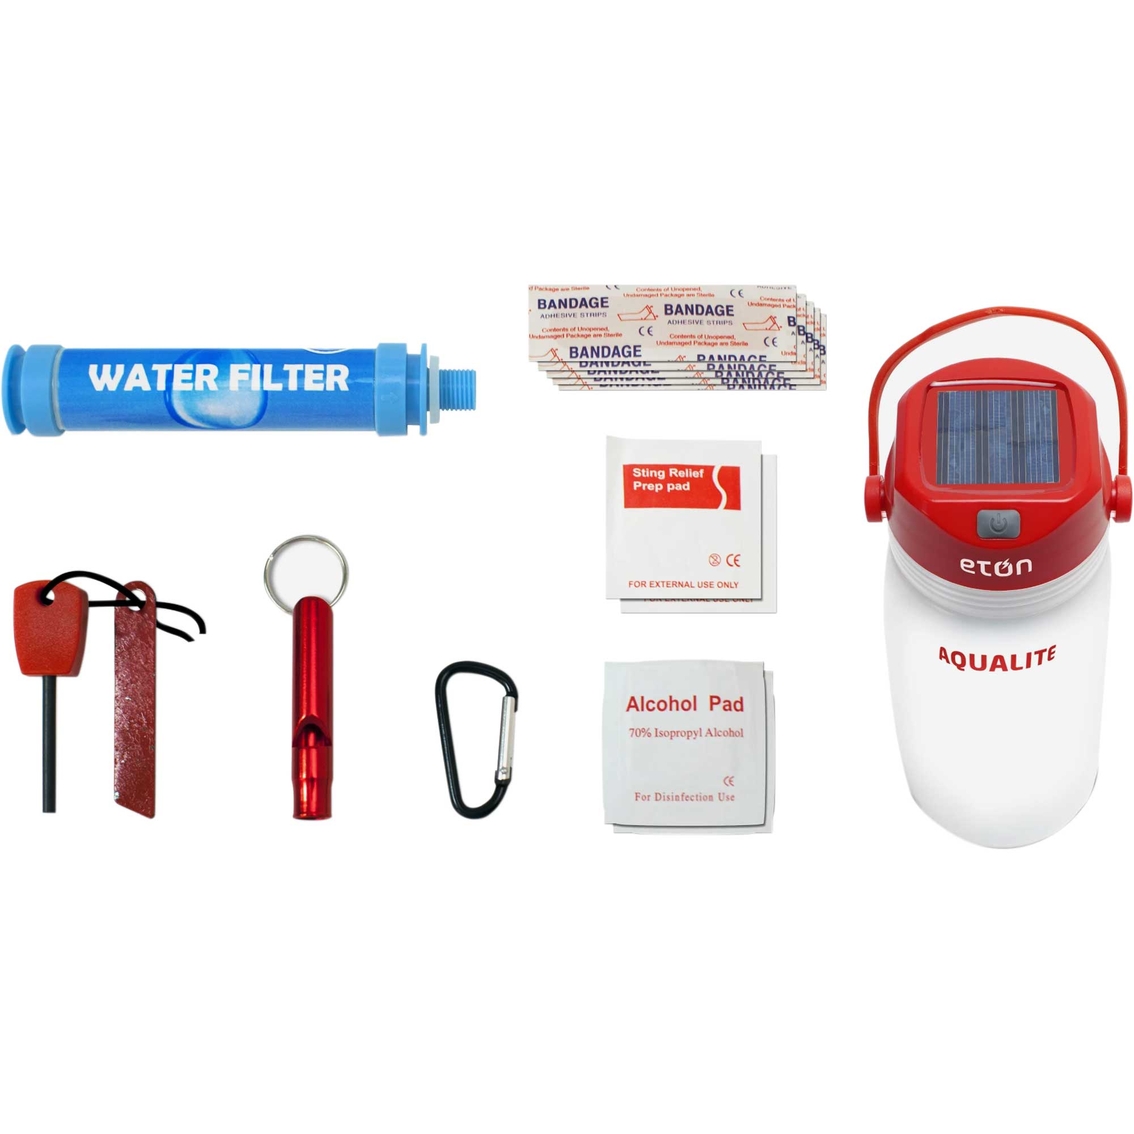 Eton AquaLite Lantern and Water Bottle - Image 2 of 2